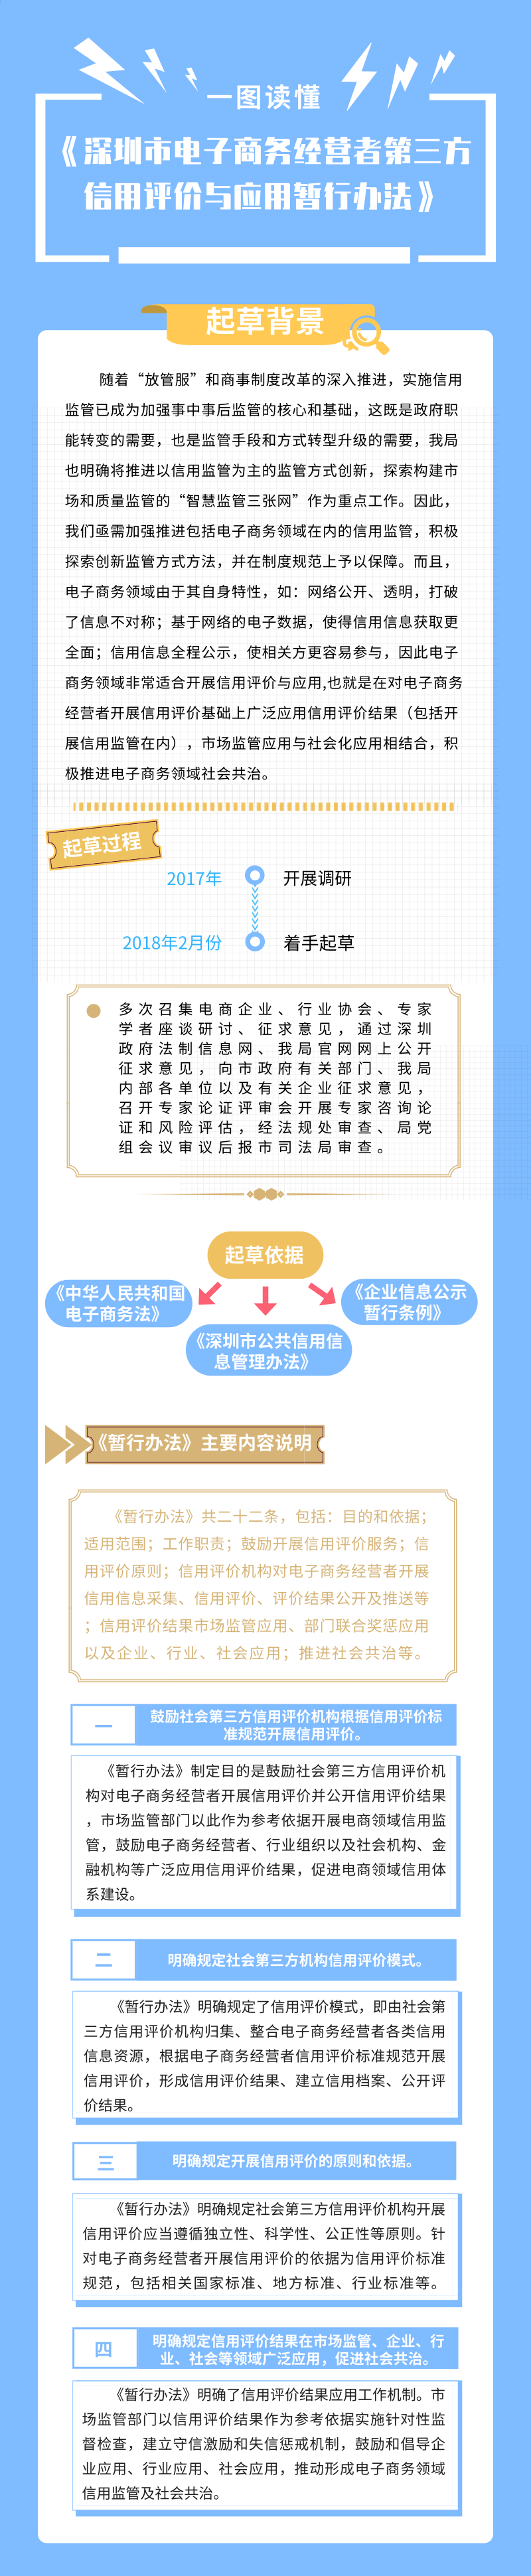 深圳市电子商务经营者第三方信用评价与应用暂行办法.png